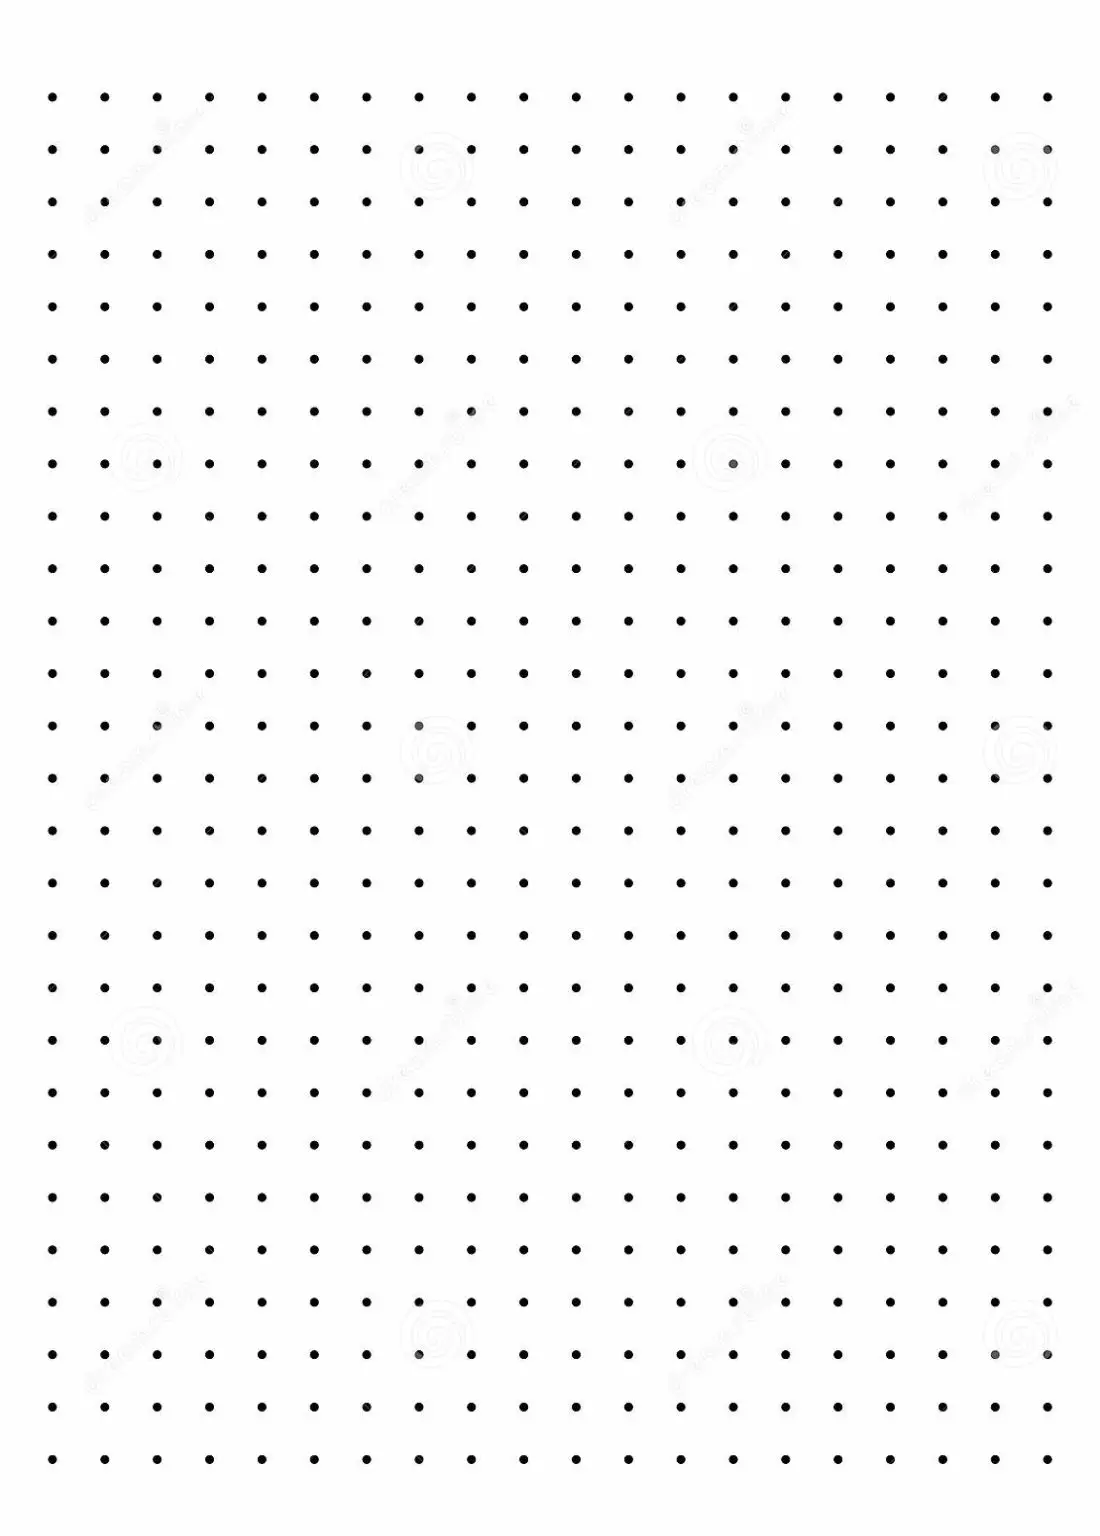 free-printable-dot-paper-or-dot-graph-template-pdf